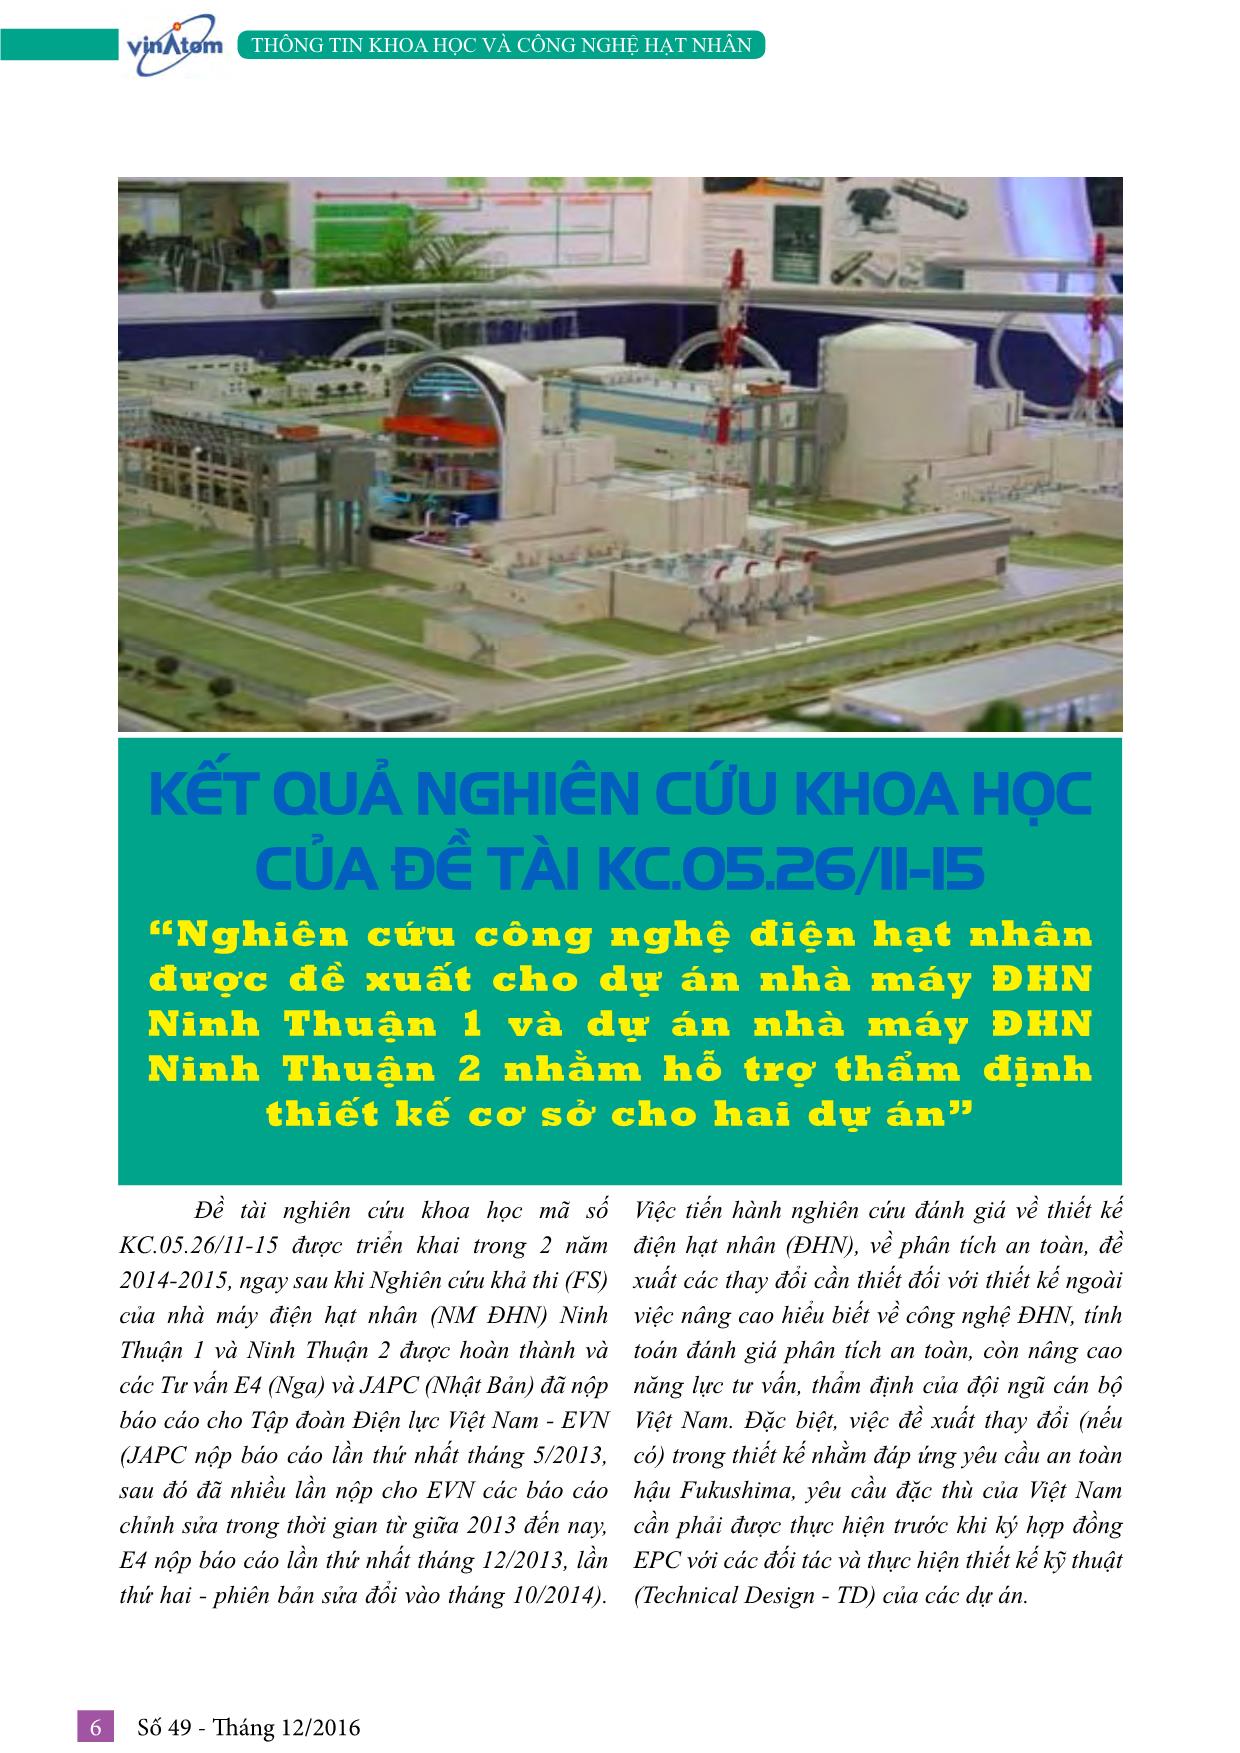 Nghiên cứu công nghệ điện hạt nhân được đề xuất cho dự án nhà máy Điện hạt nhân Ninh Thuận 1 và dự án nhà máy Điện hạt nhân Ninh Thuận 2 nhằm hỗ trợ thẩm định thiết kế cơ sở cho hai dự án trang 1